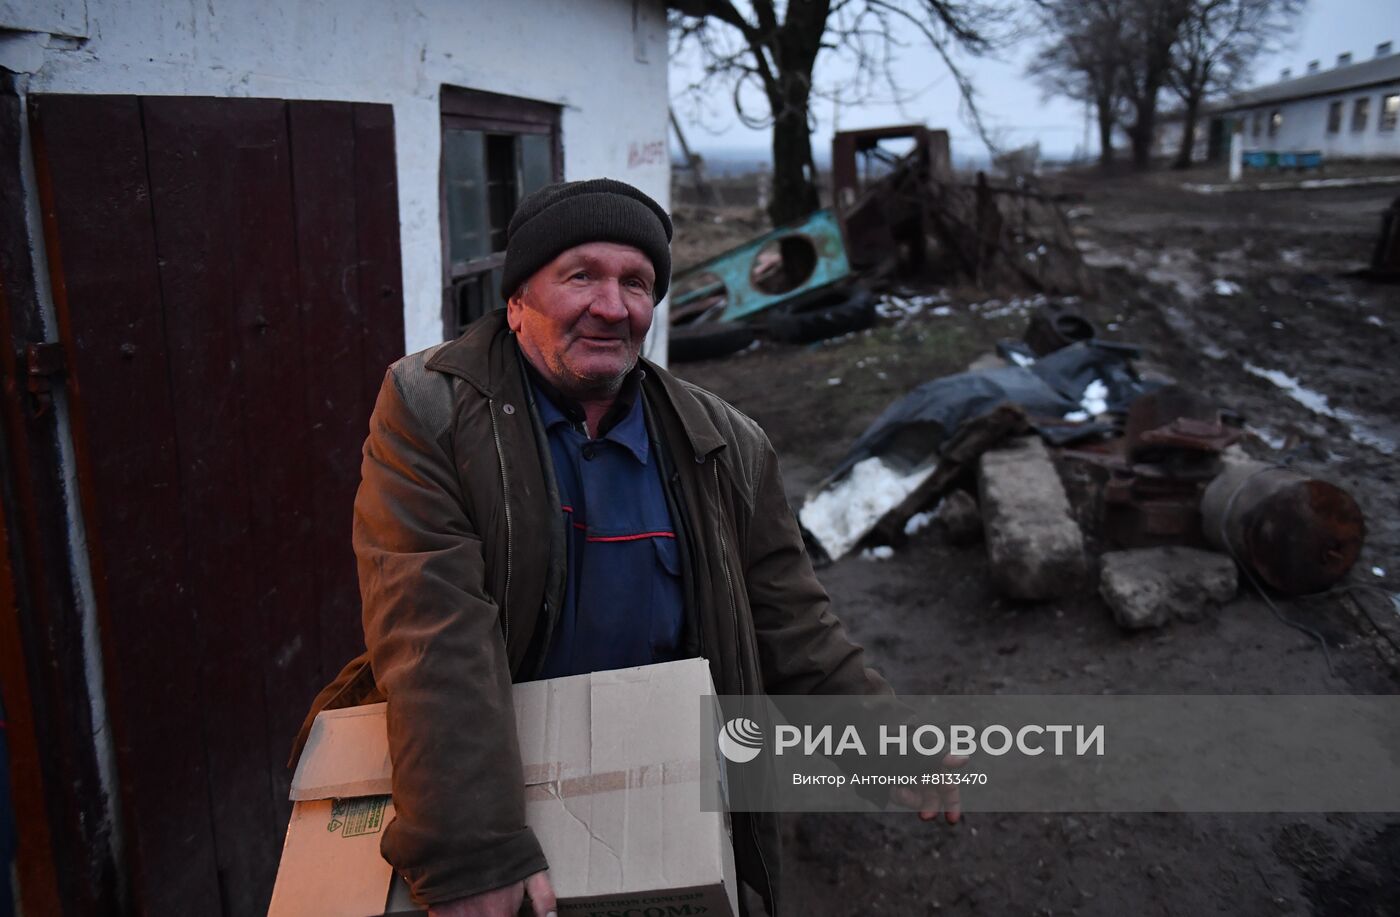 Освобожденные территории Донецкой народной республики